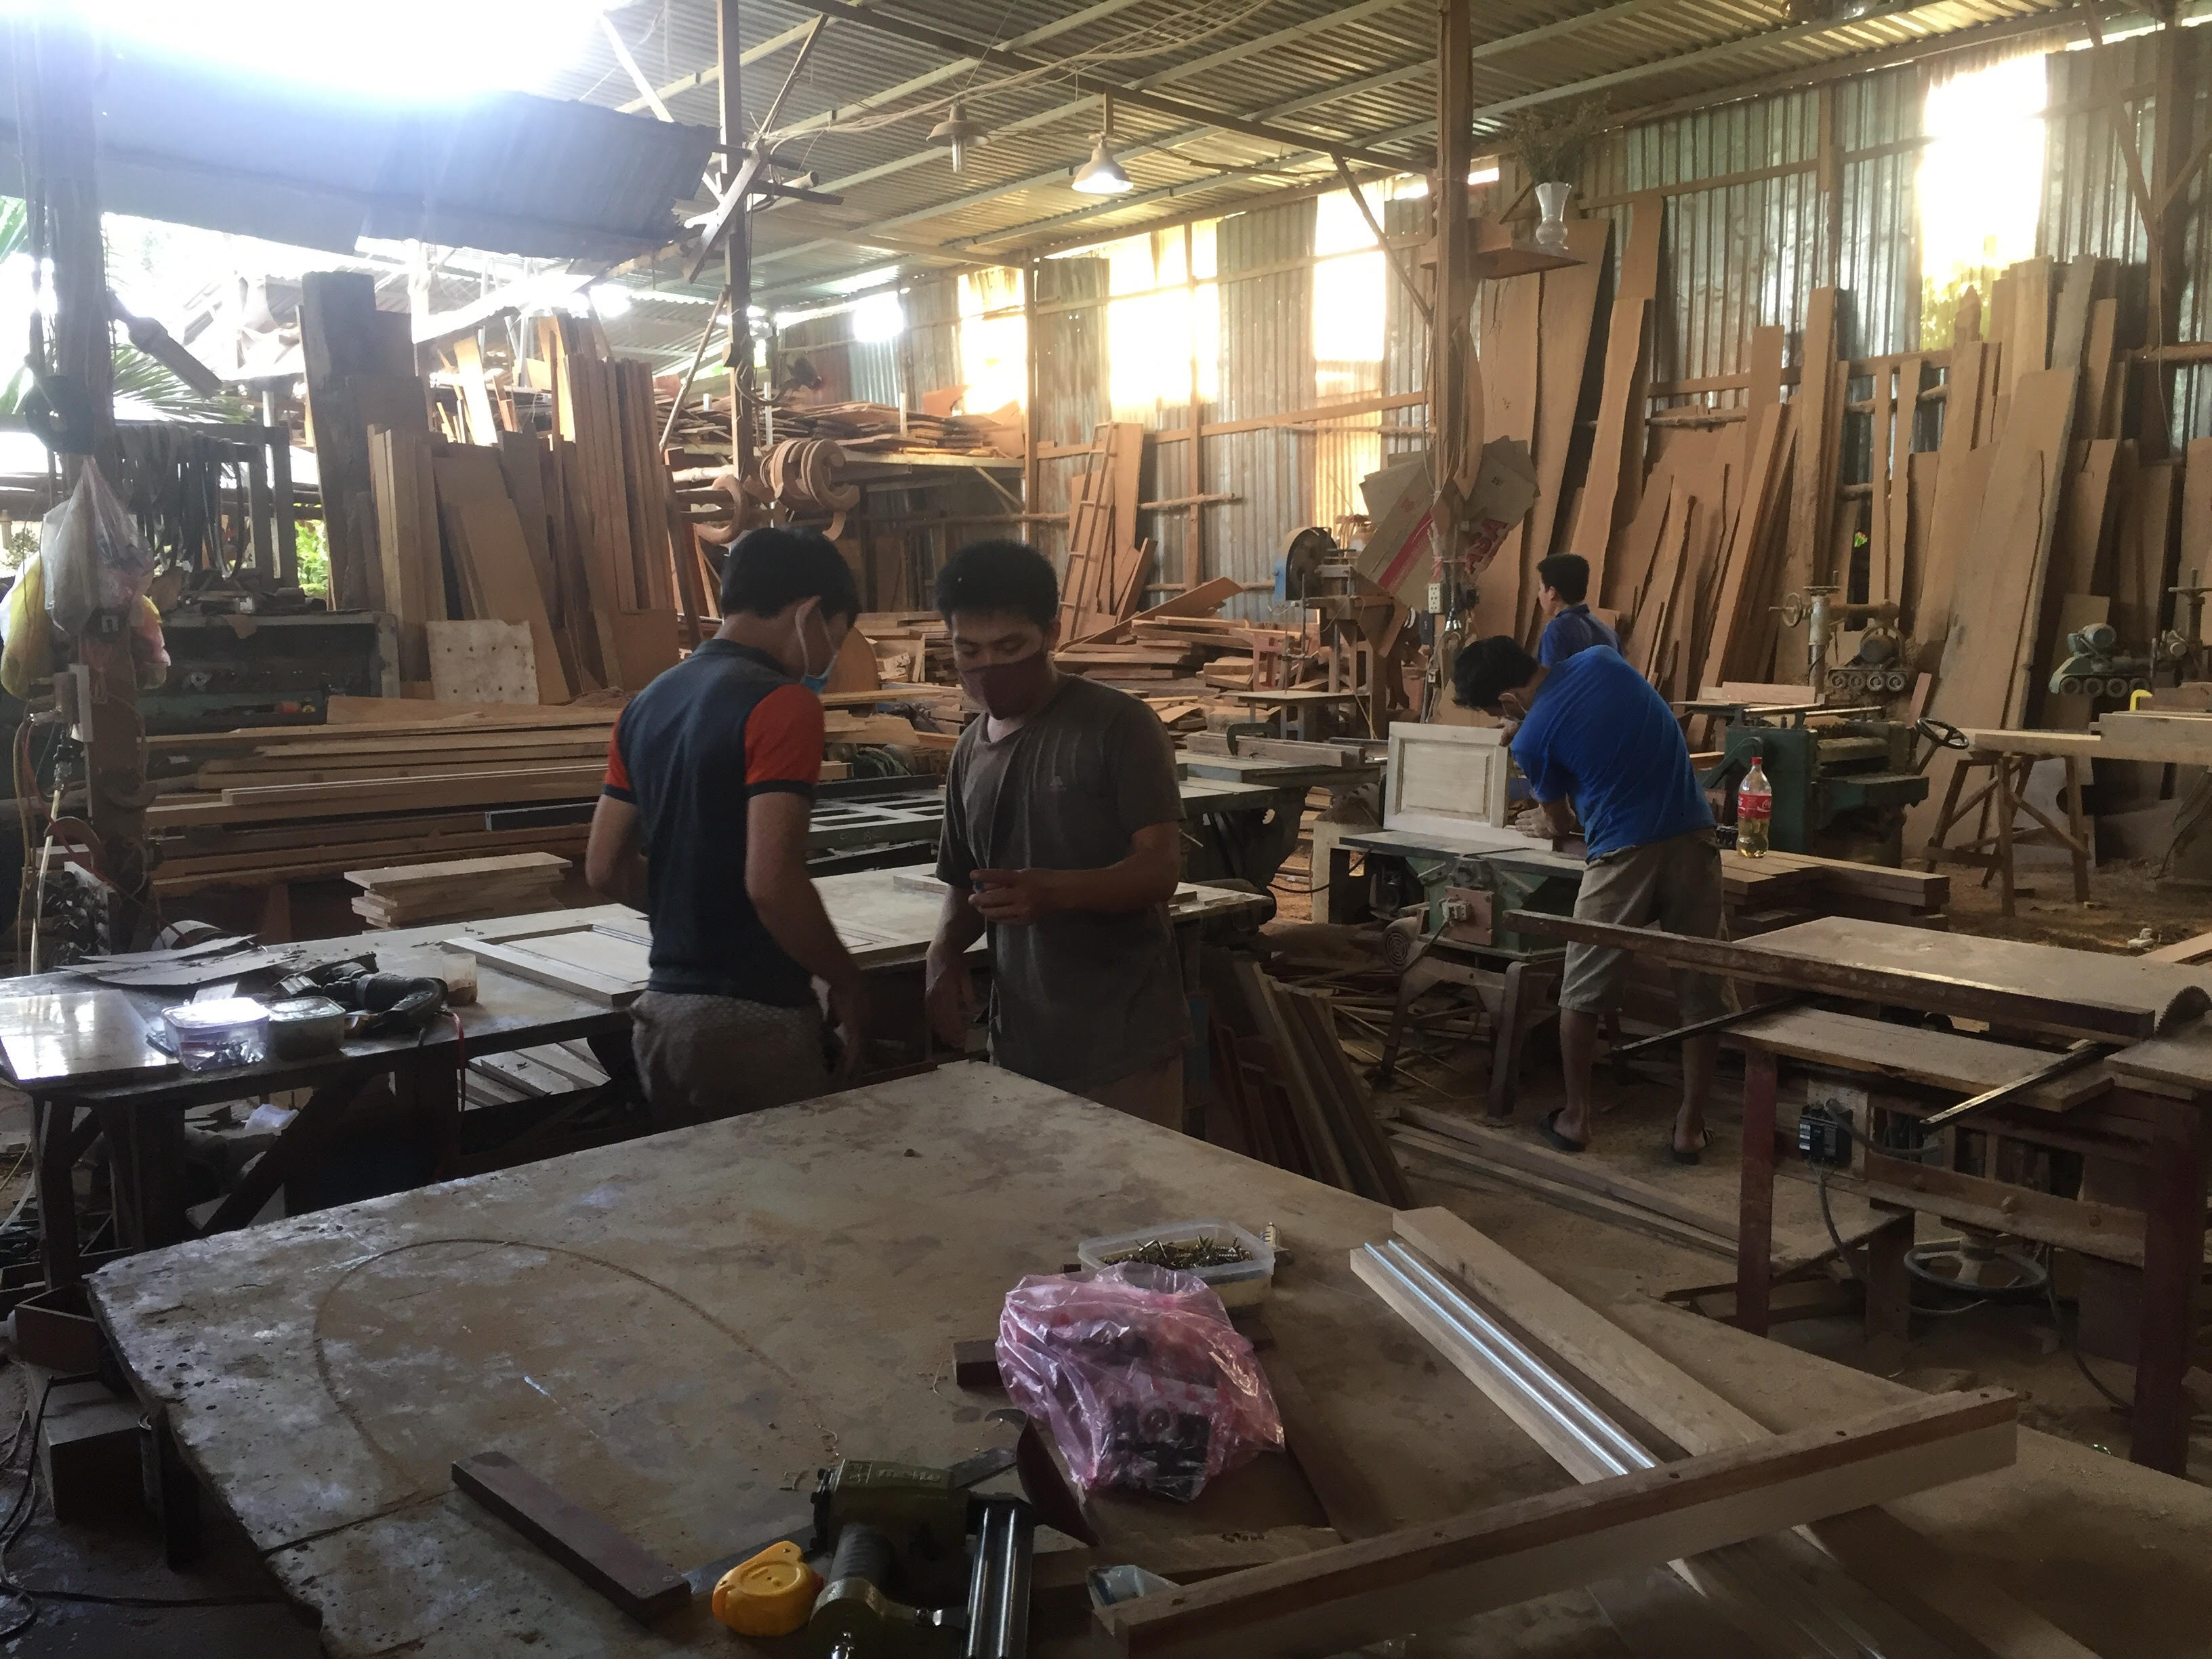 Xưởng sản xuất đồ gỗ 18.jpg (962 KB)